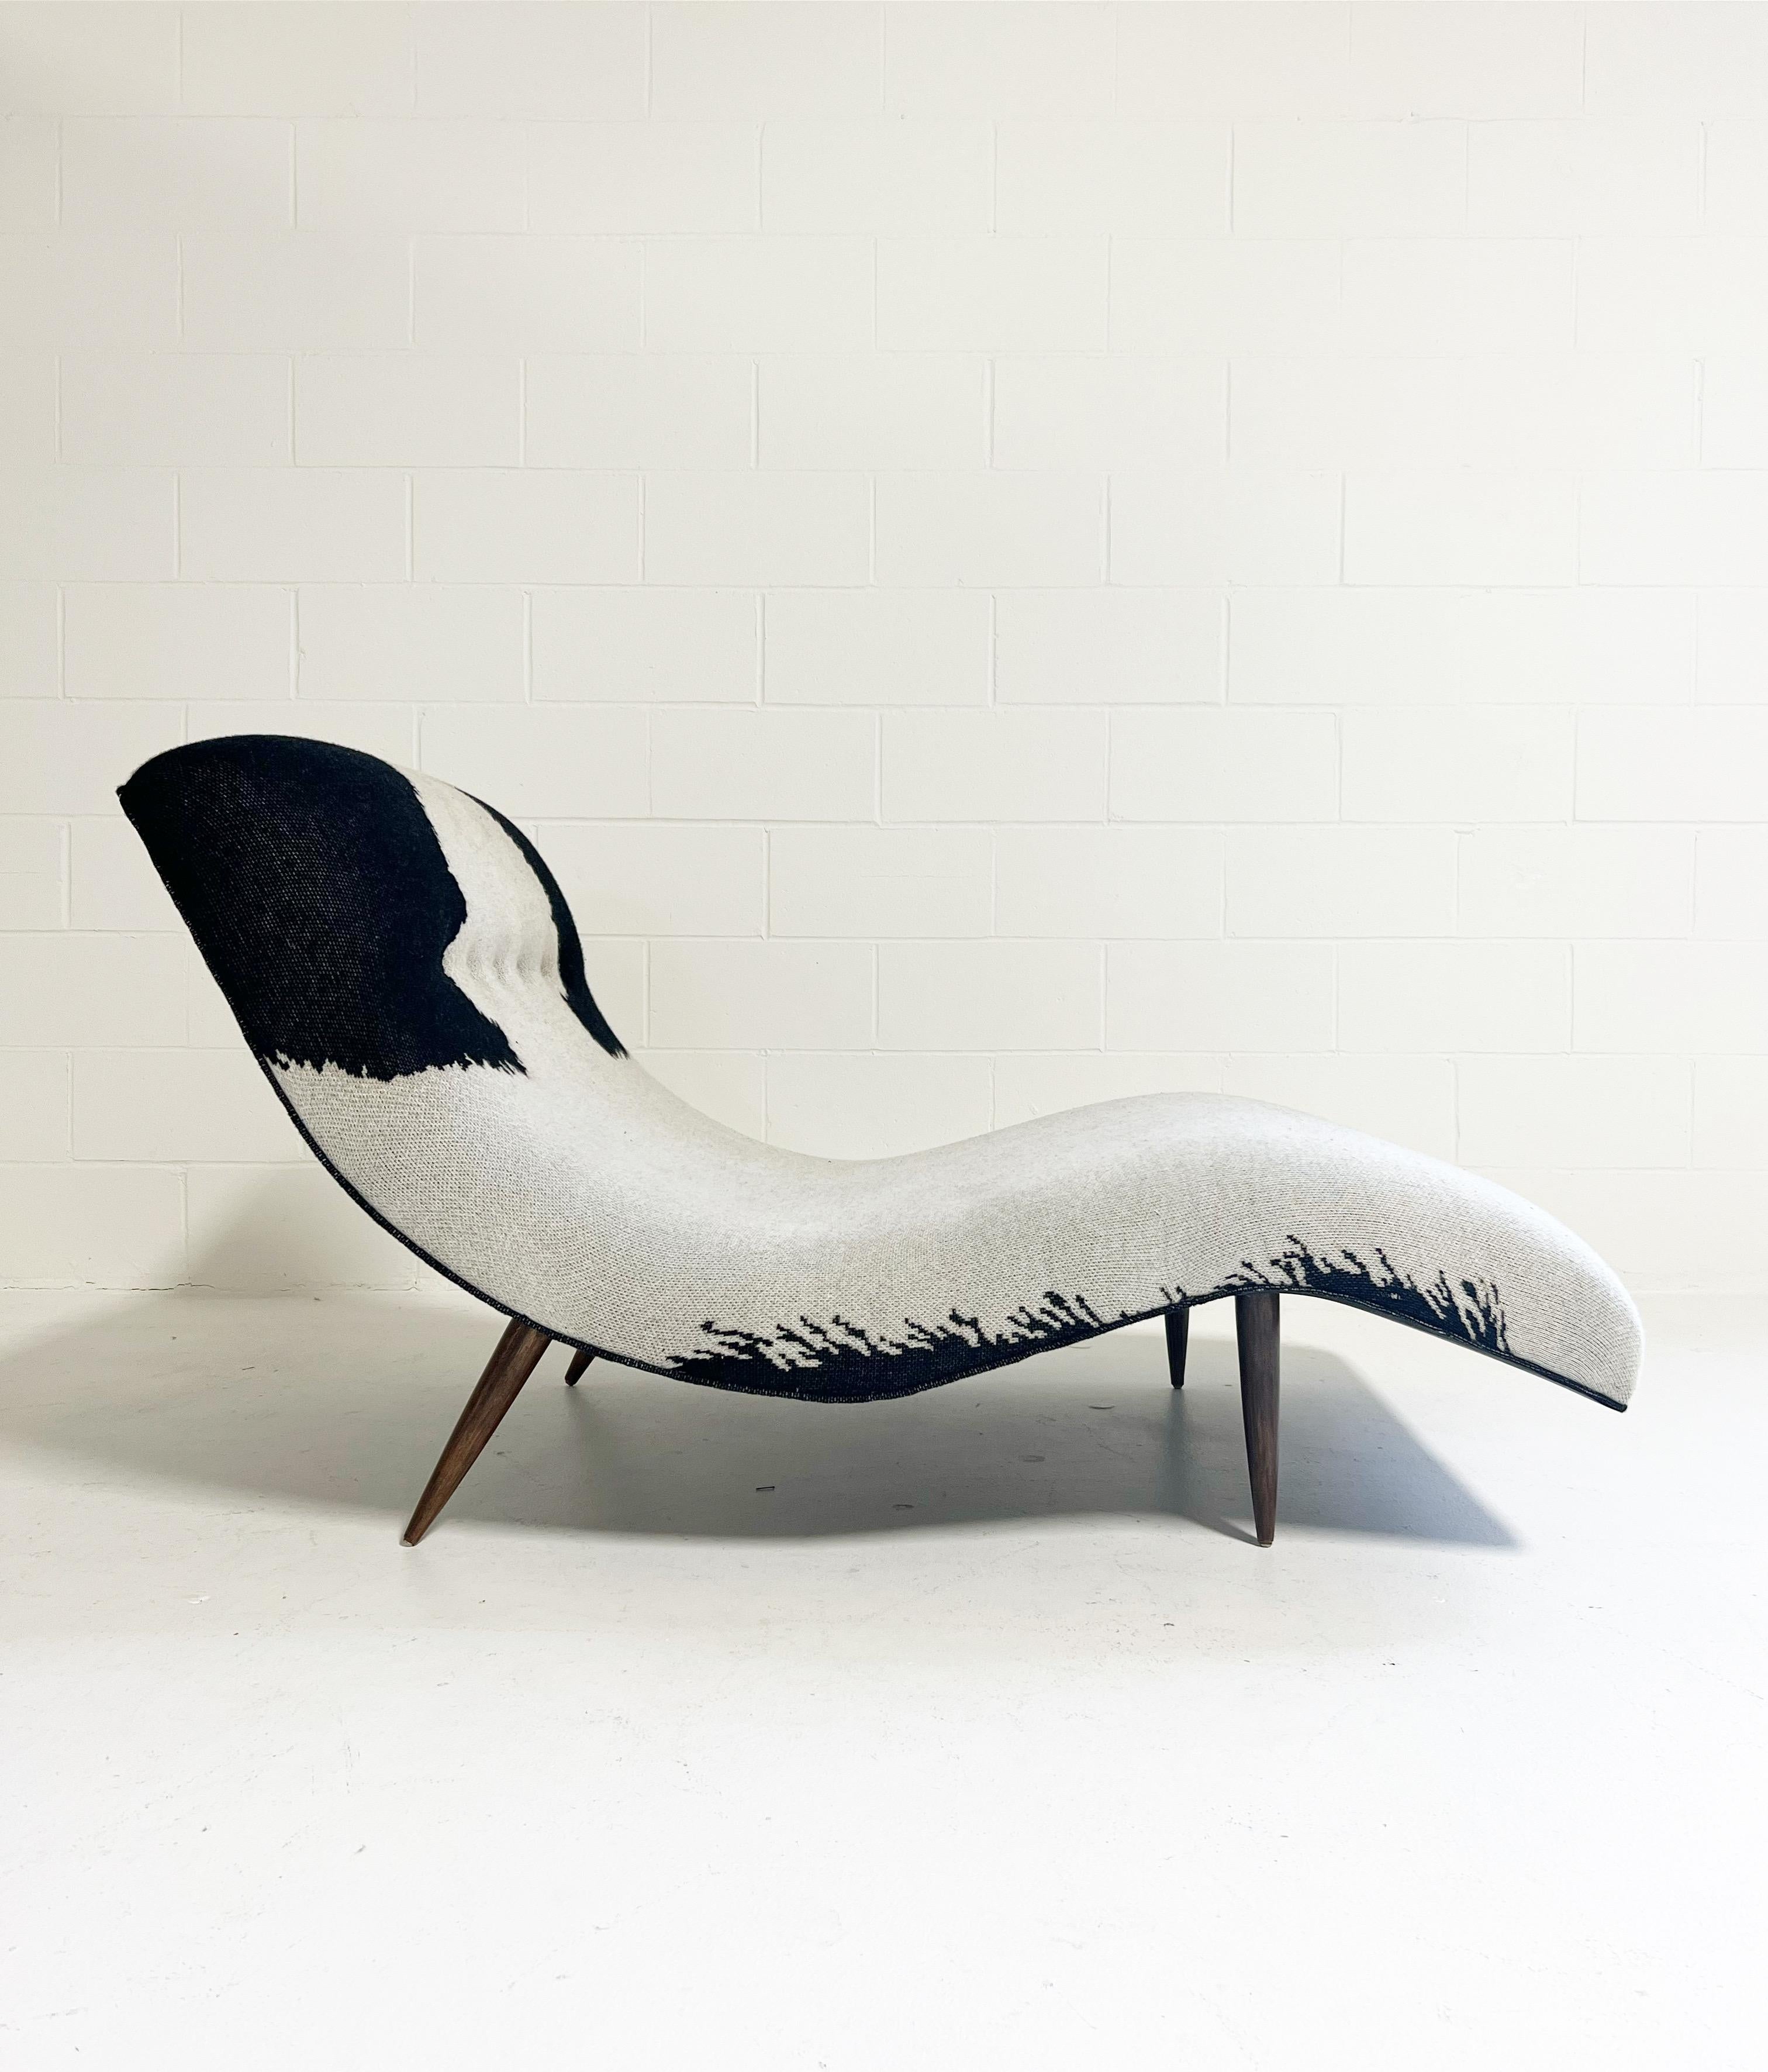 Il s'agit d'une chaise longue originale Adrian Pearsall en forme de vague. Adrian Pearsall a commencé sa carrière en tant qu'architecte, mais s'est lancé dans la conception de meubles, devenant rapidement un chef de file du mouvement moderniste.